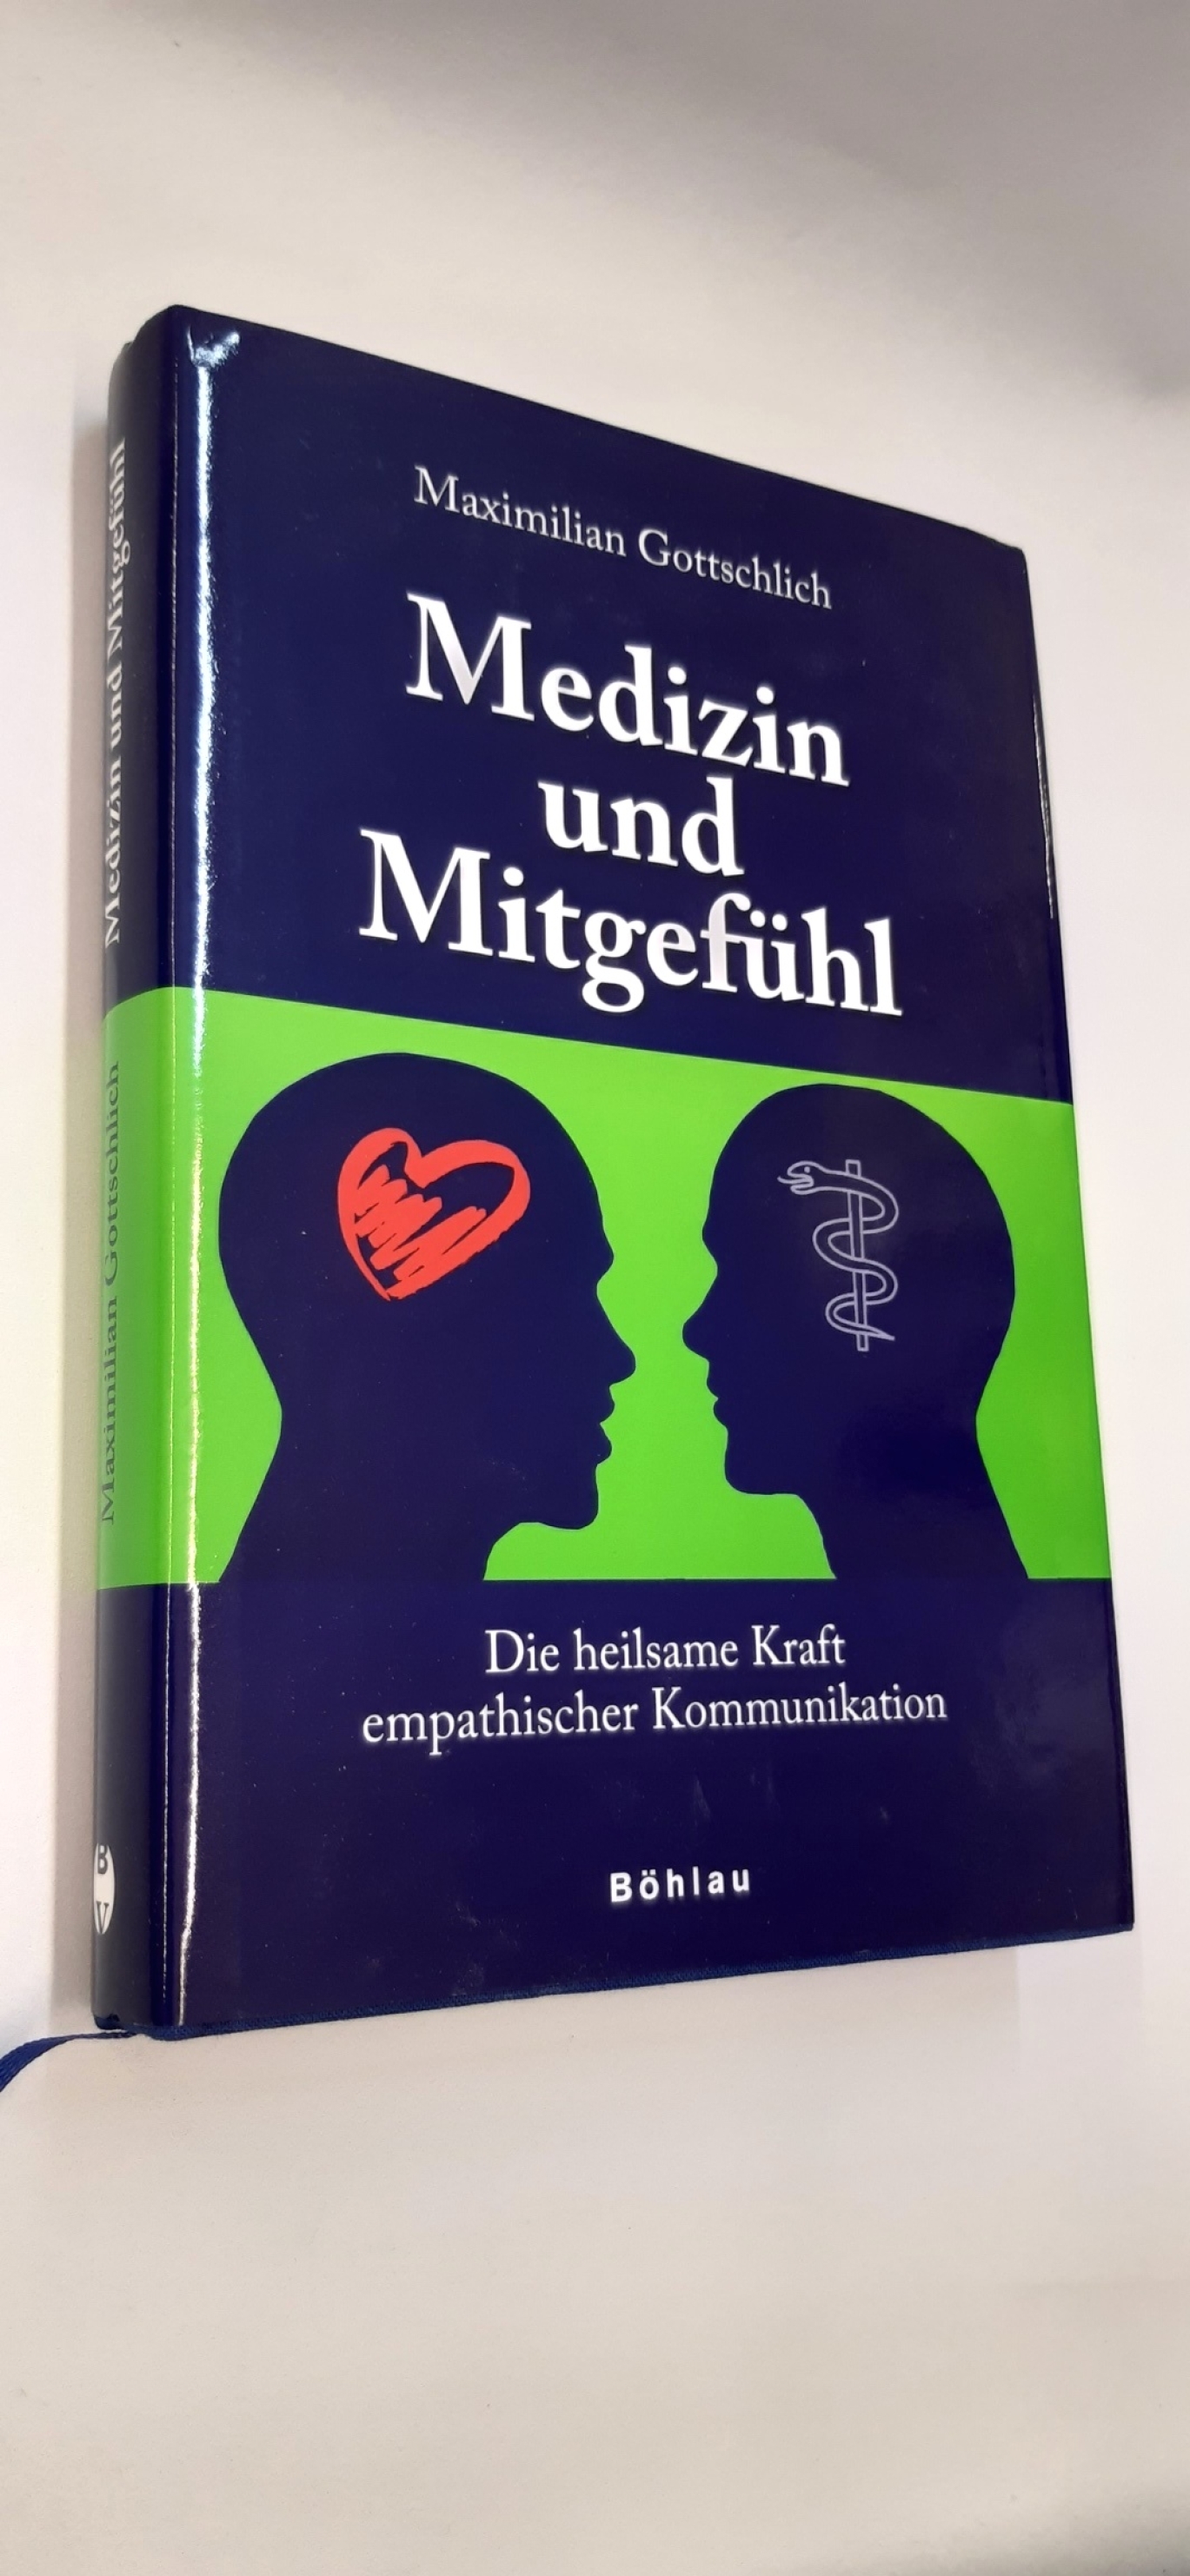 Gottschlich, Maximilian (Verfasser): Medizin und Mitgefühl Die heilsame Kraft empathischer Kommunikation / Maximilian Gottschlich